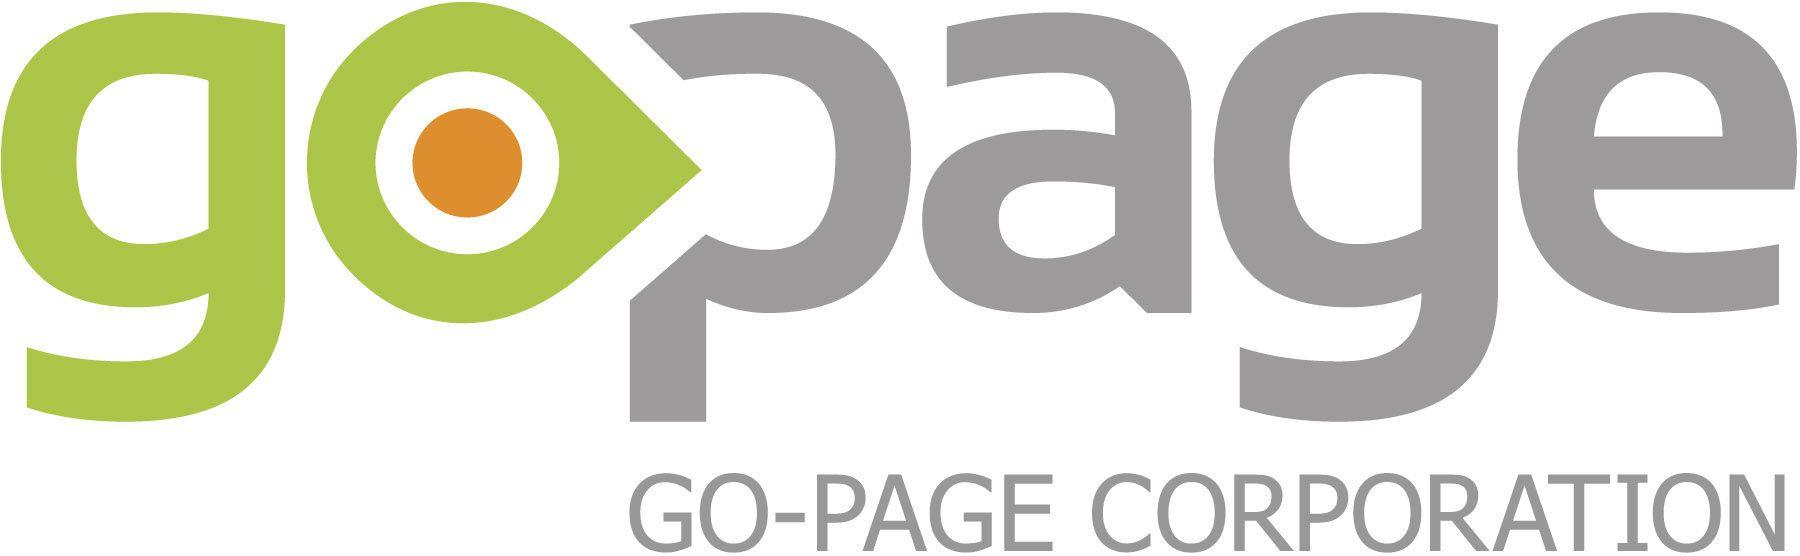 URL Logo - gopage-logo-url-rgb-300-dpi - BC Tech